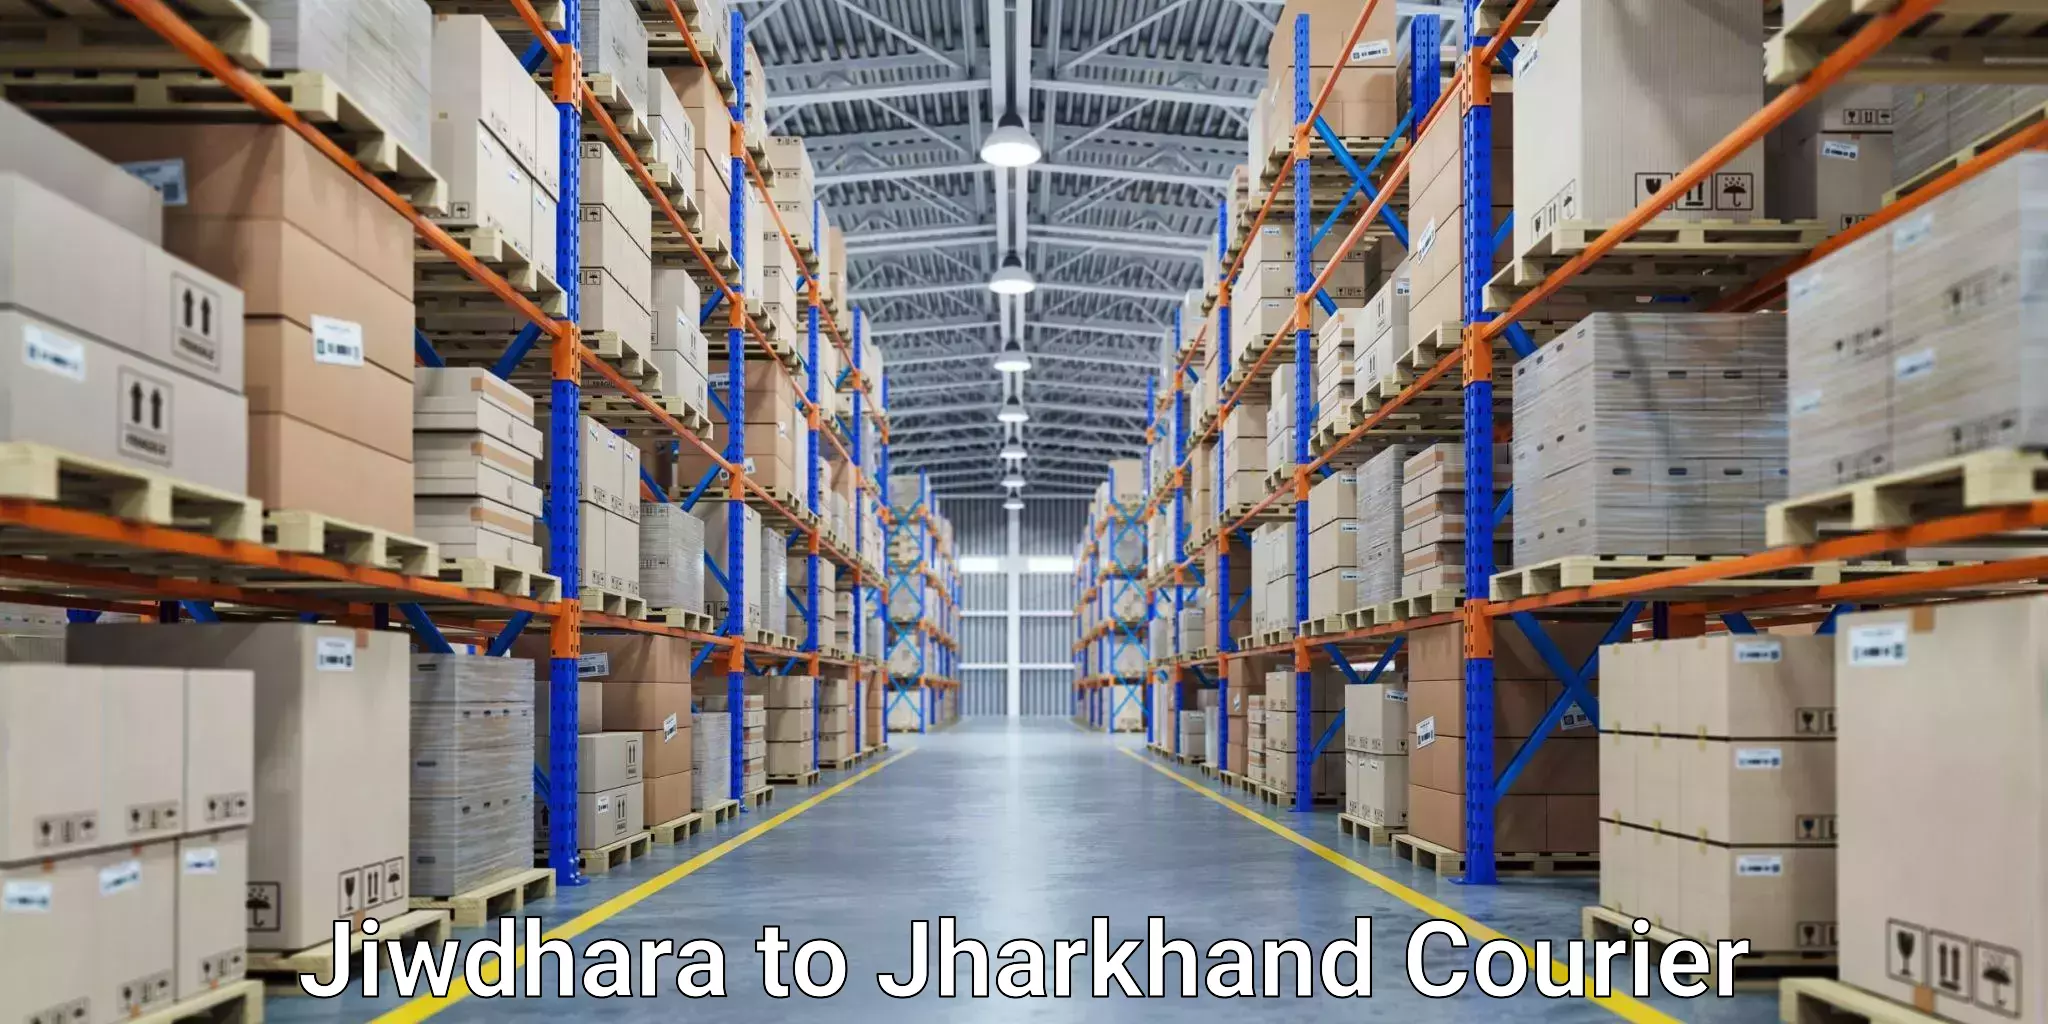 Digital courier platforms Jiwdhara to Barwadih